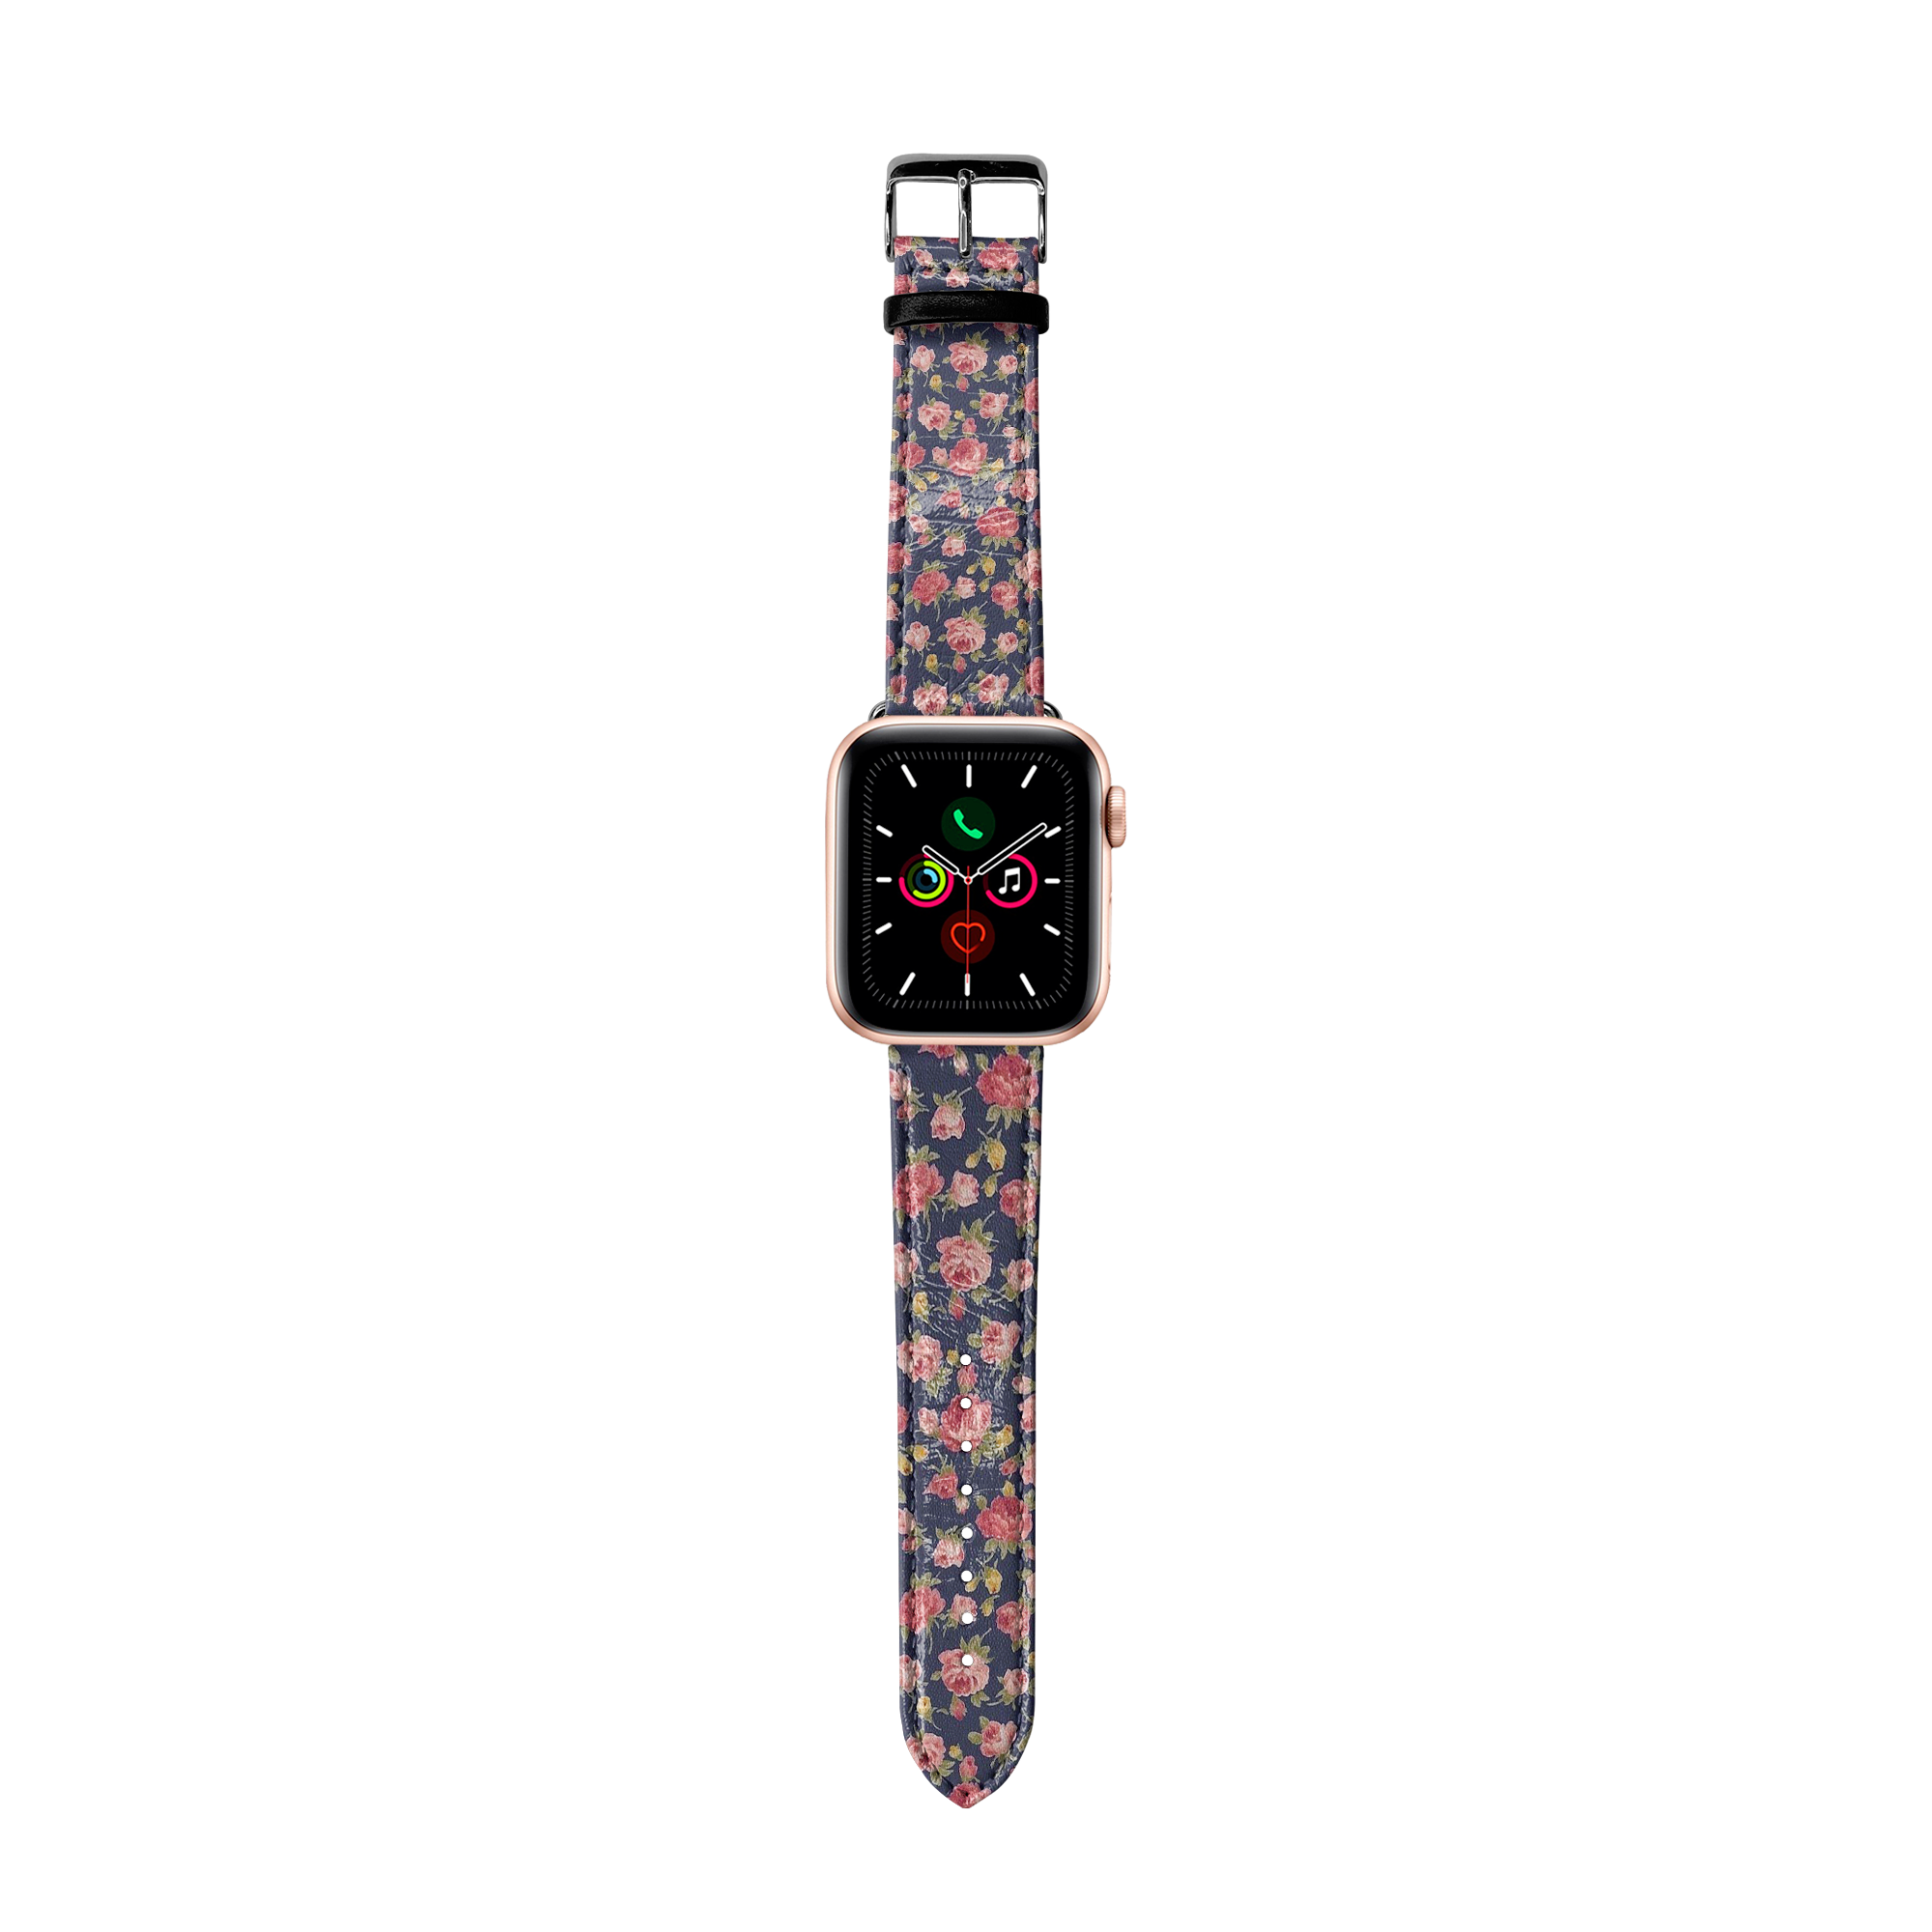 Apple Watch Premium Leather Strap Flower Series Design 03